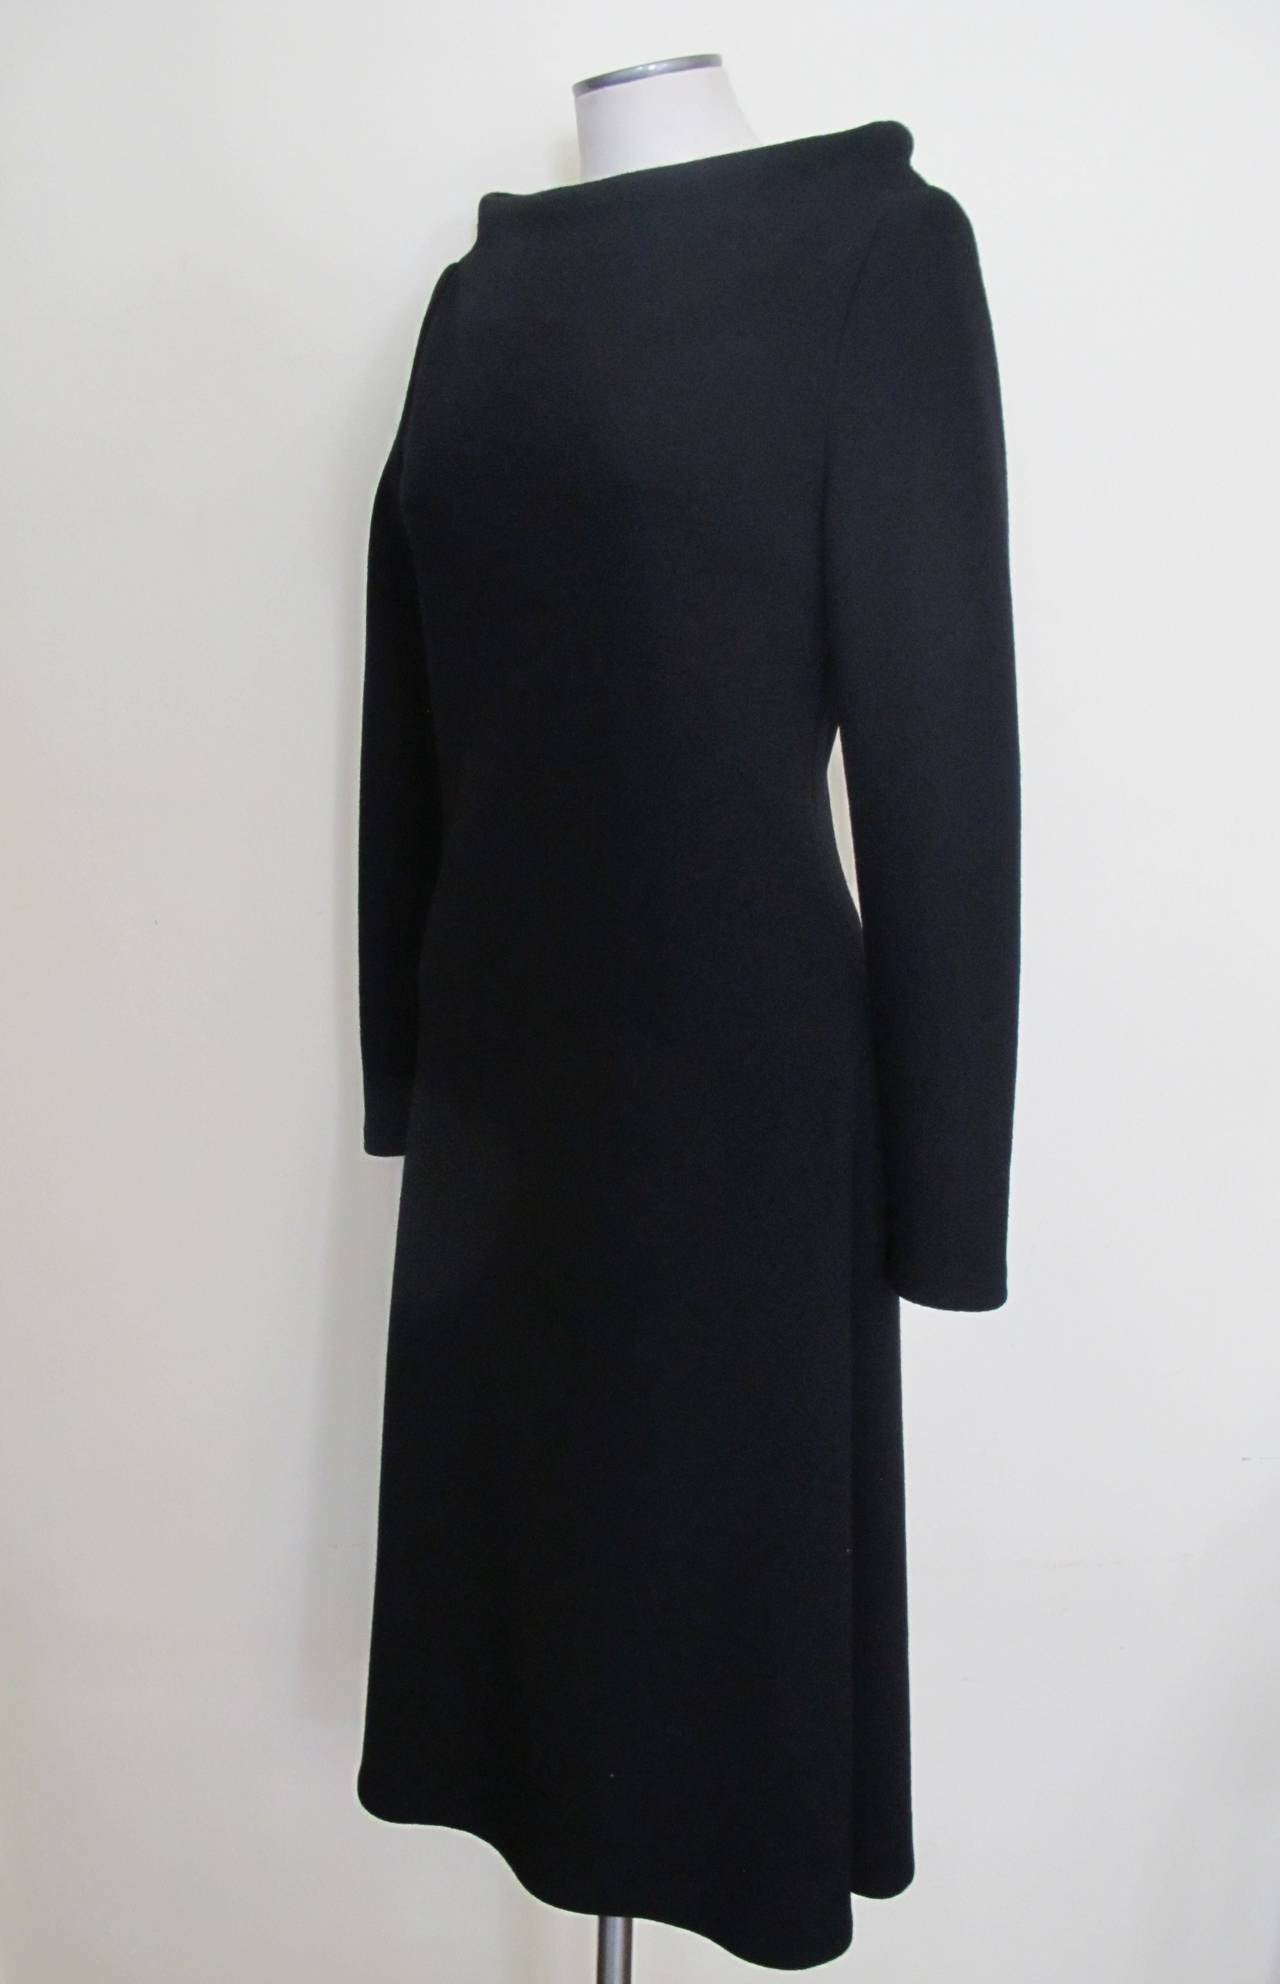 barbara schwarzer dress